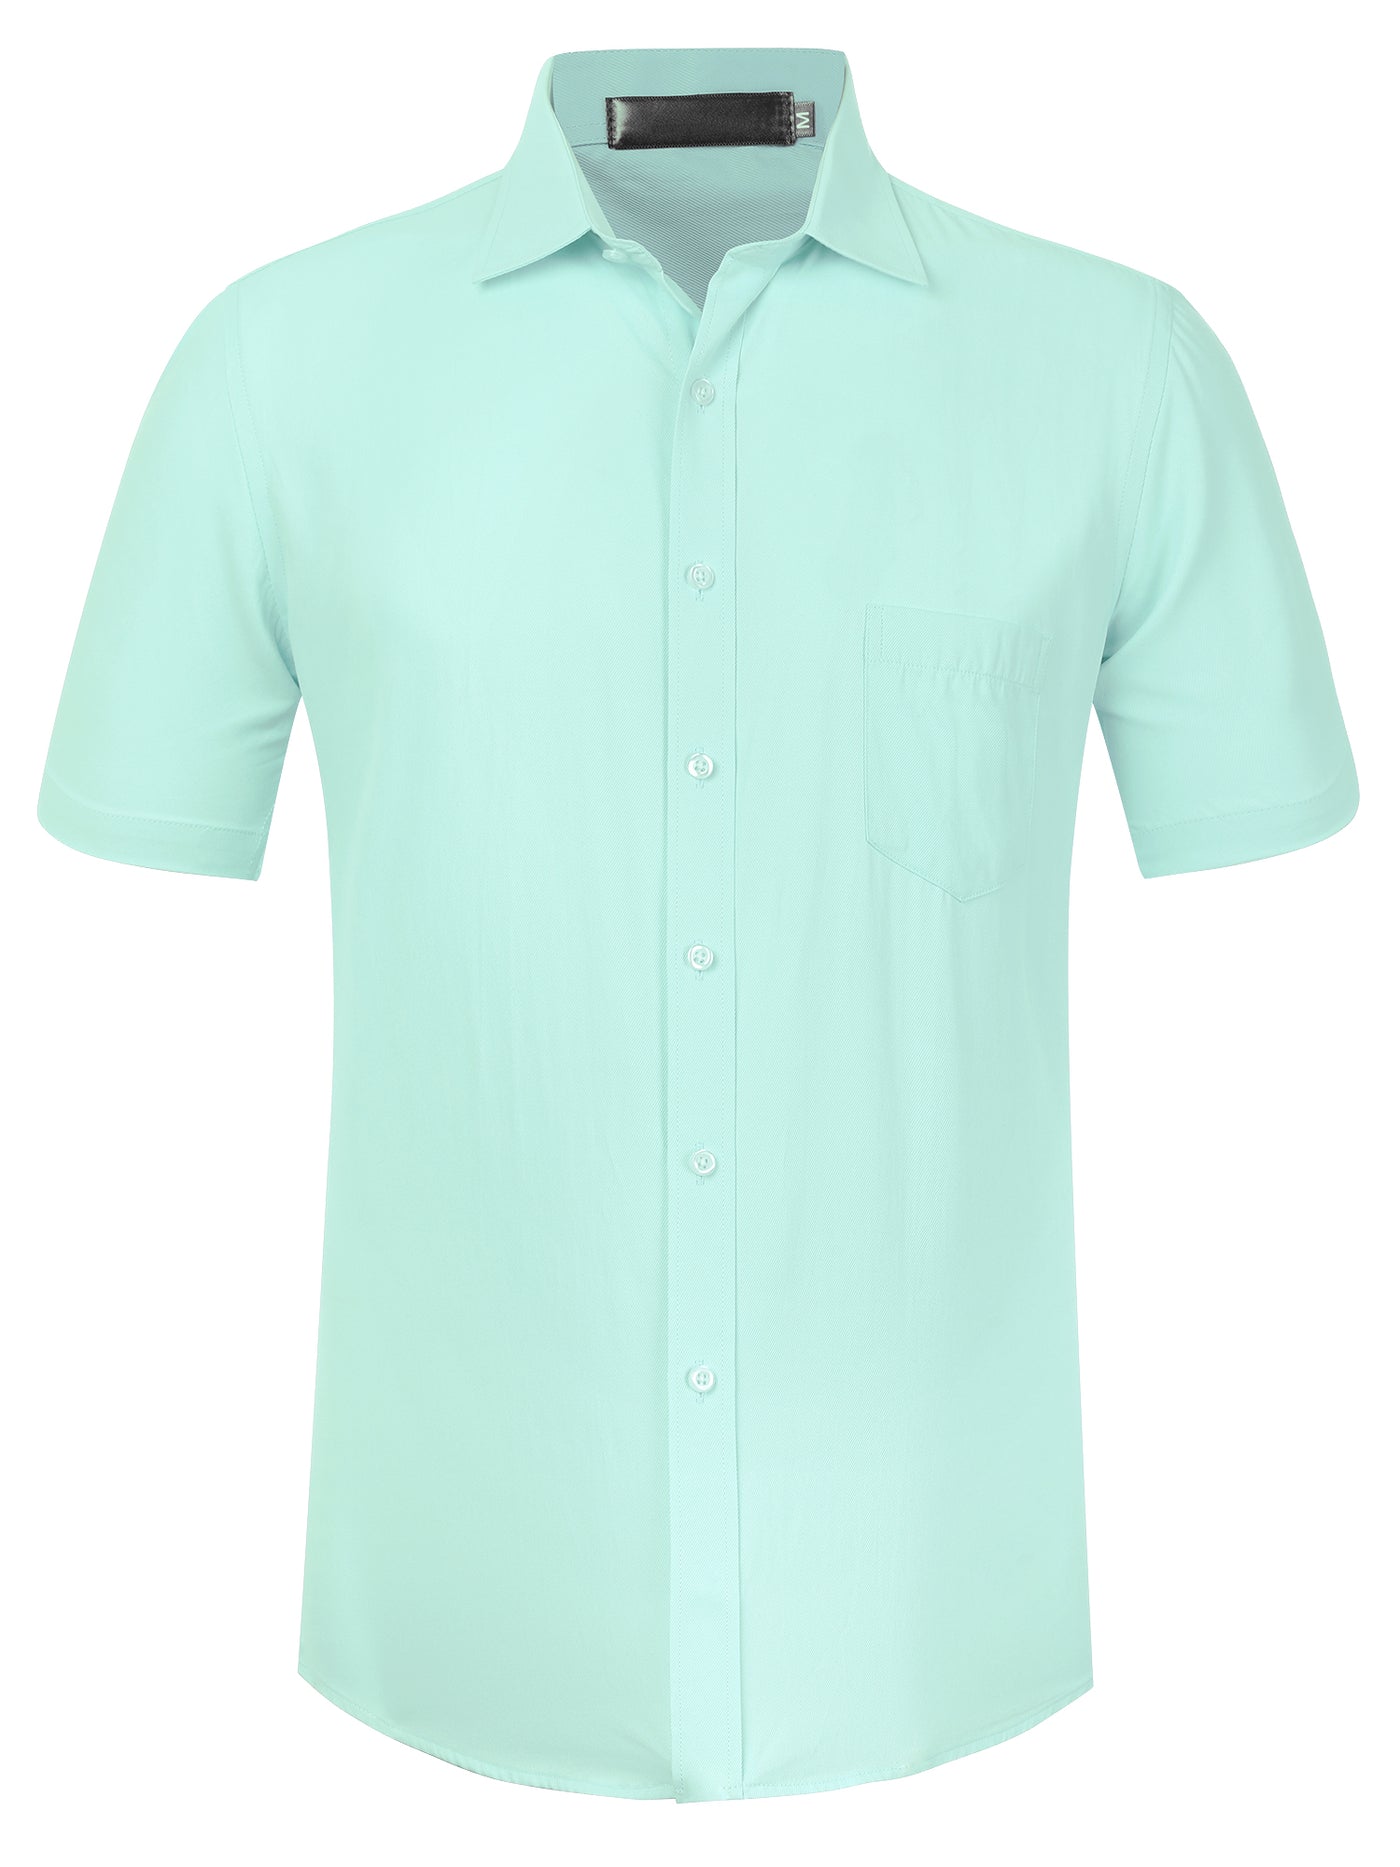 Bublédon Lapel Short Sleeve Button Business Solid Color Shirt